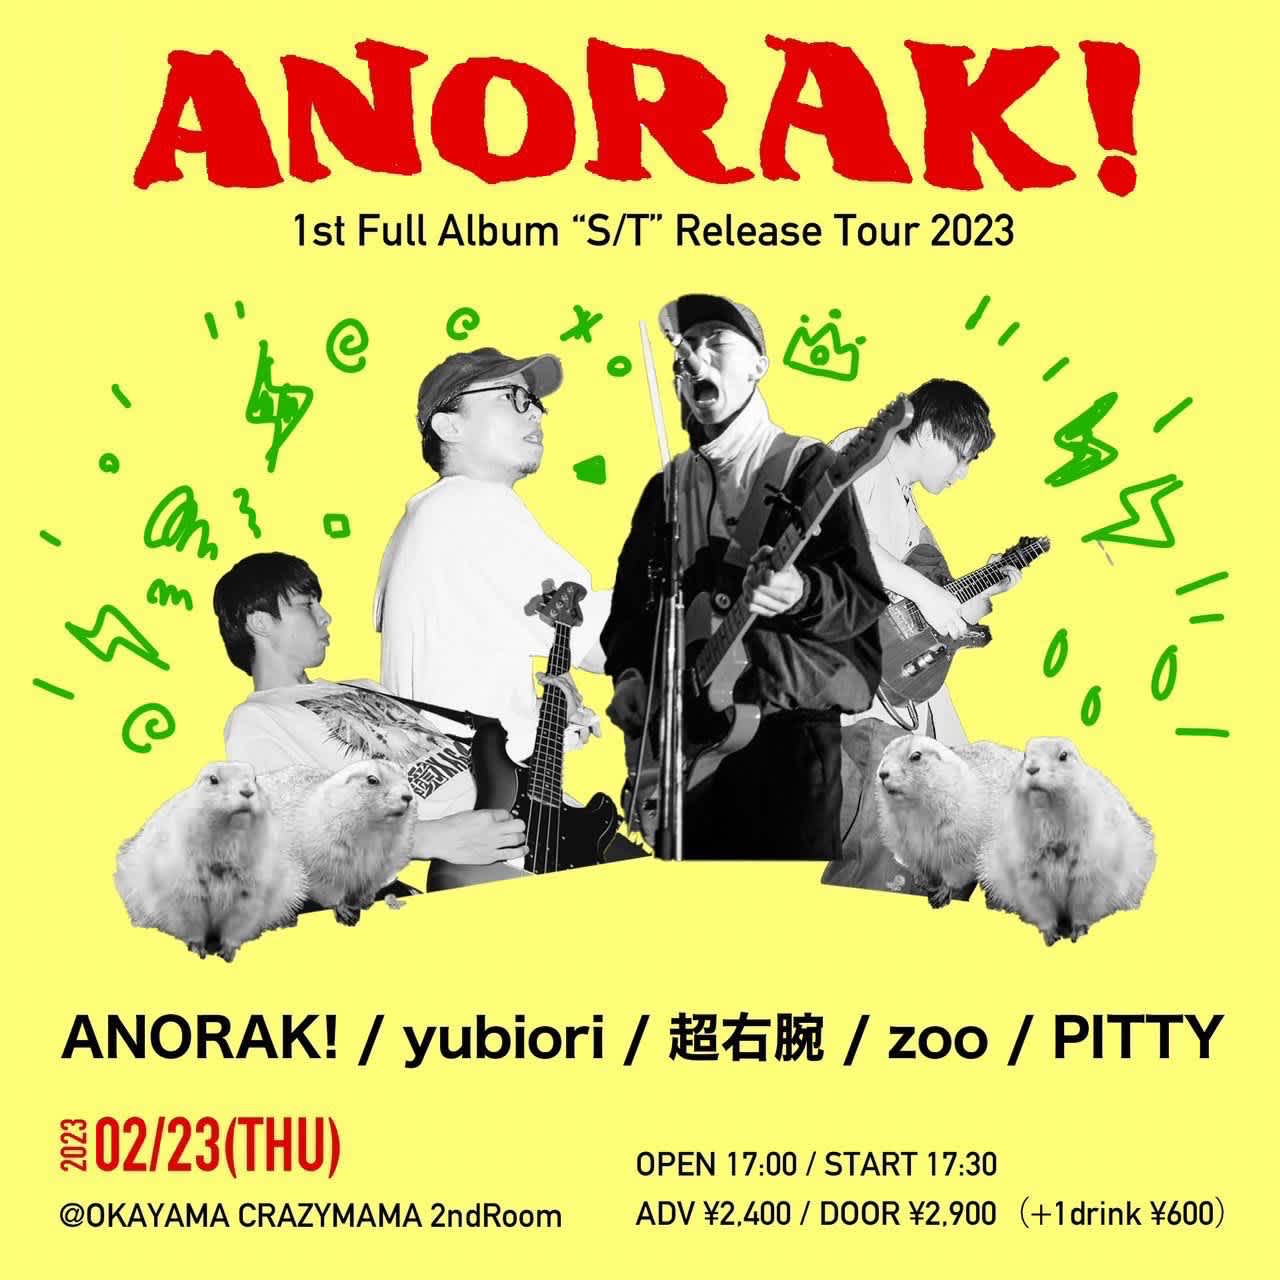 ANORAK!-1st Full Album"S/T"Release Tour 2023-のイメージ1